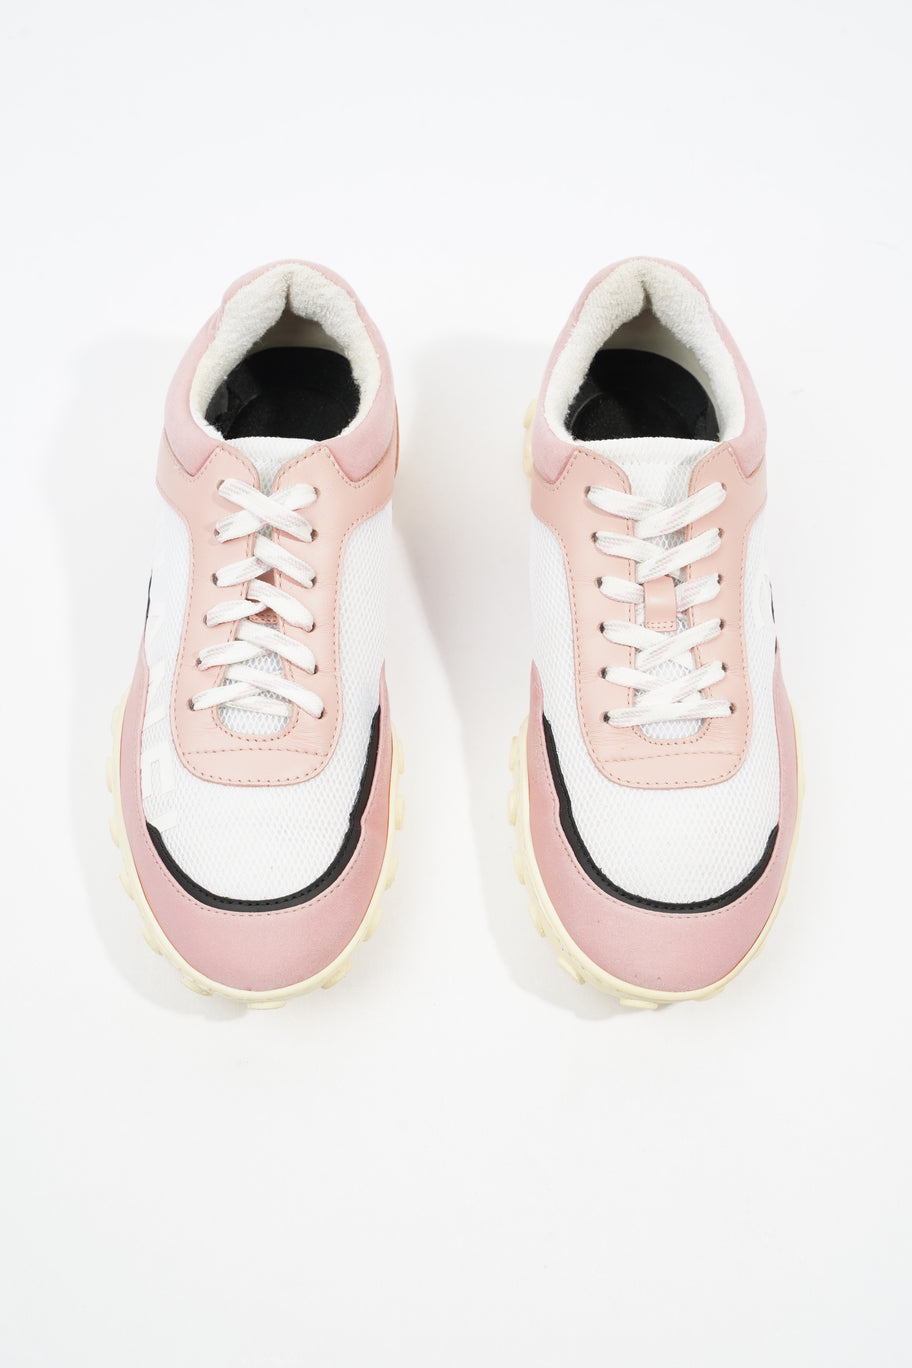 Low Top Sneaker White / Pink Mesh EU 37.5 UK 4.5 Image 8